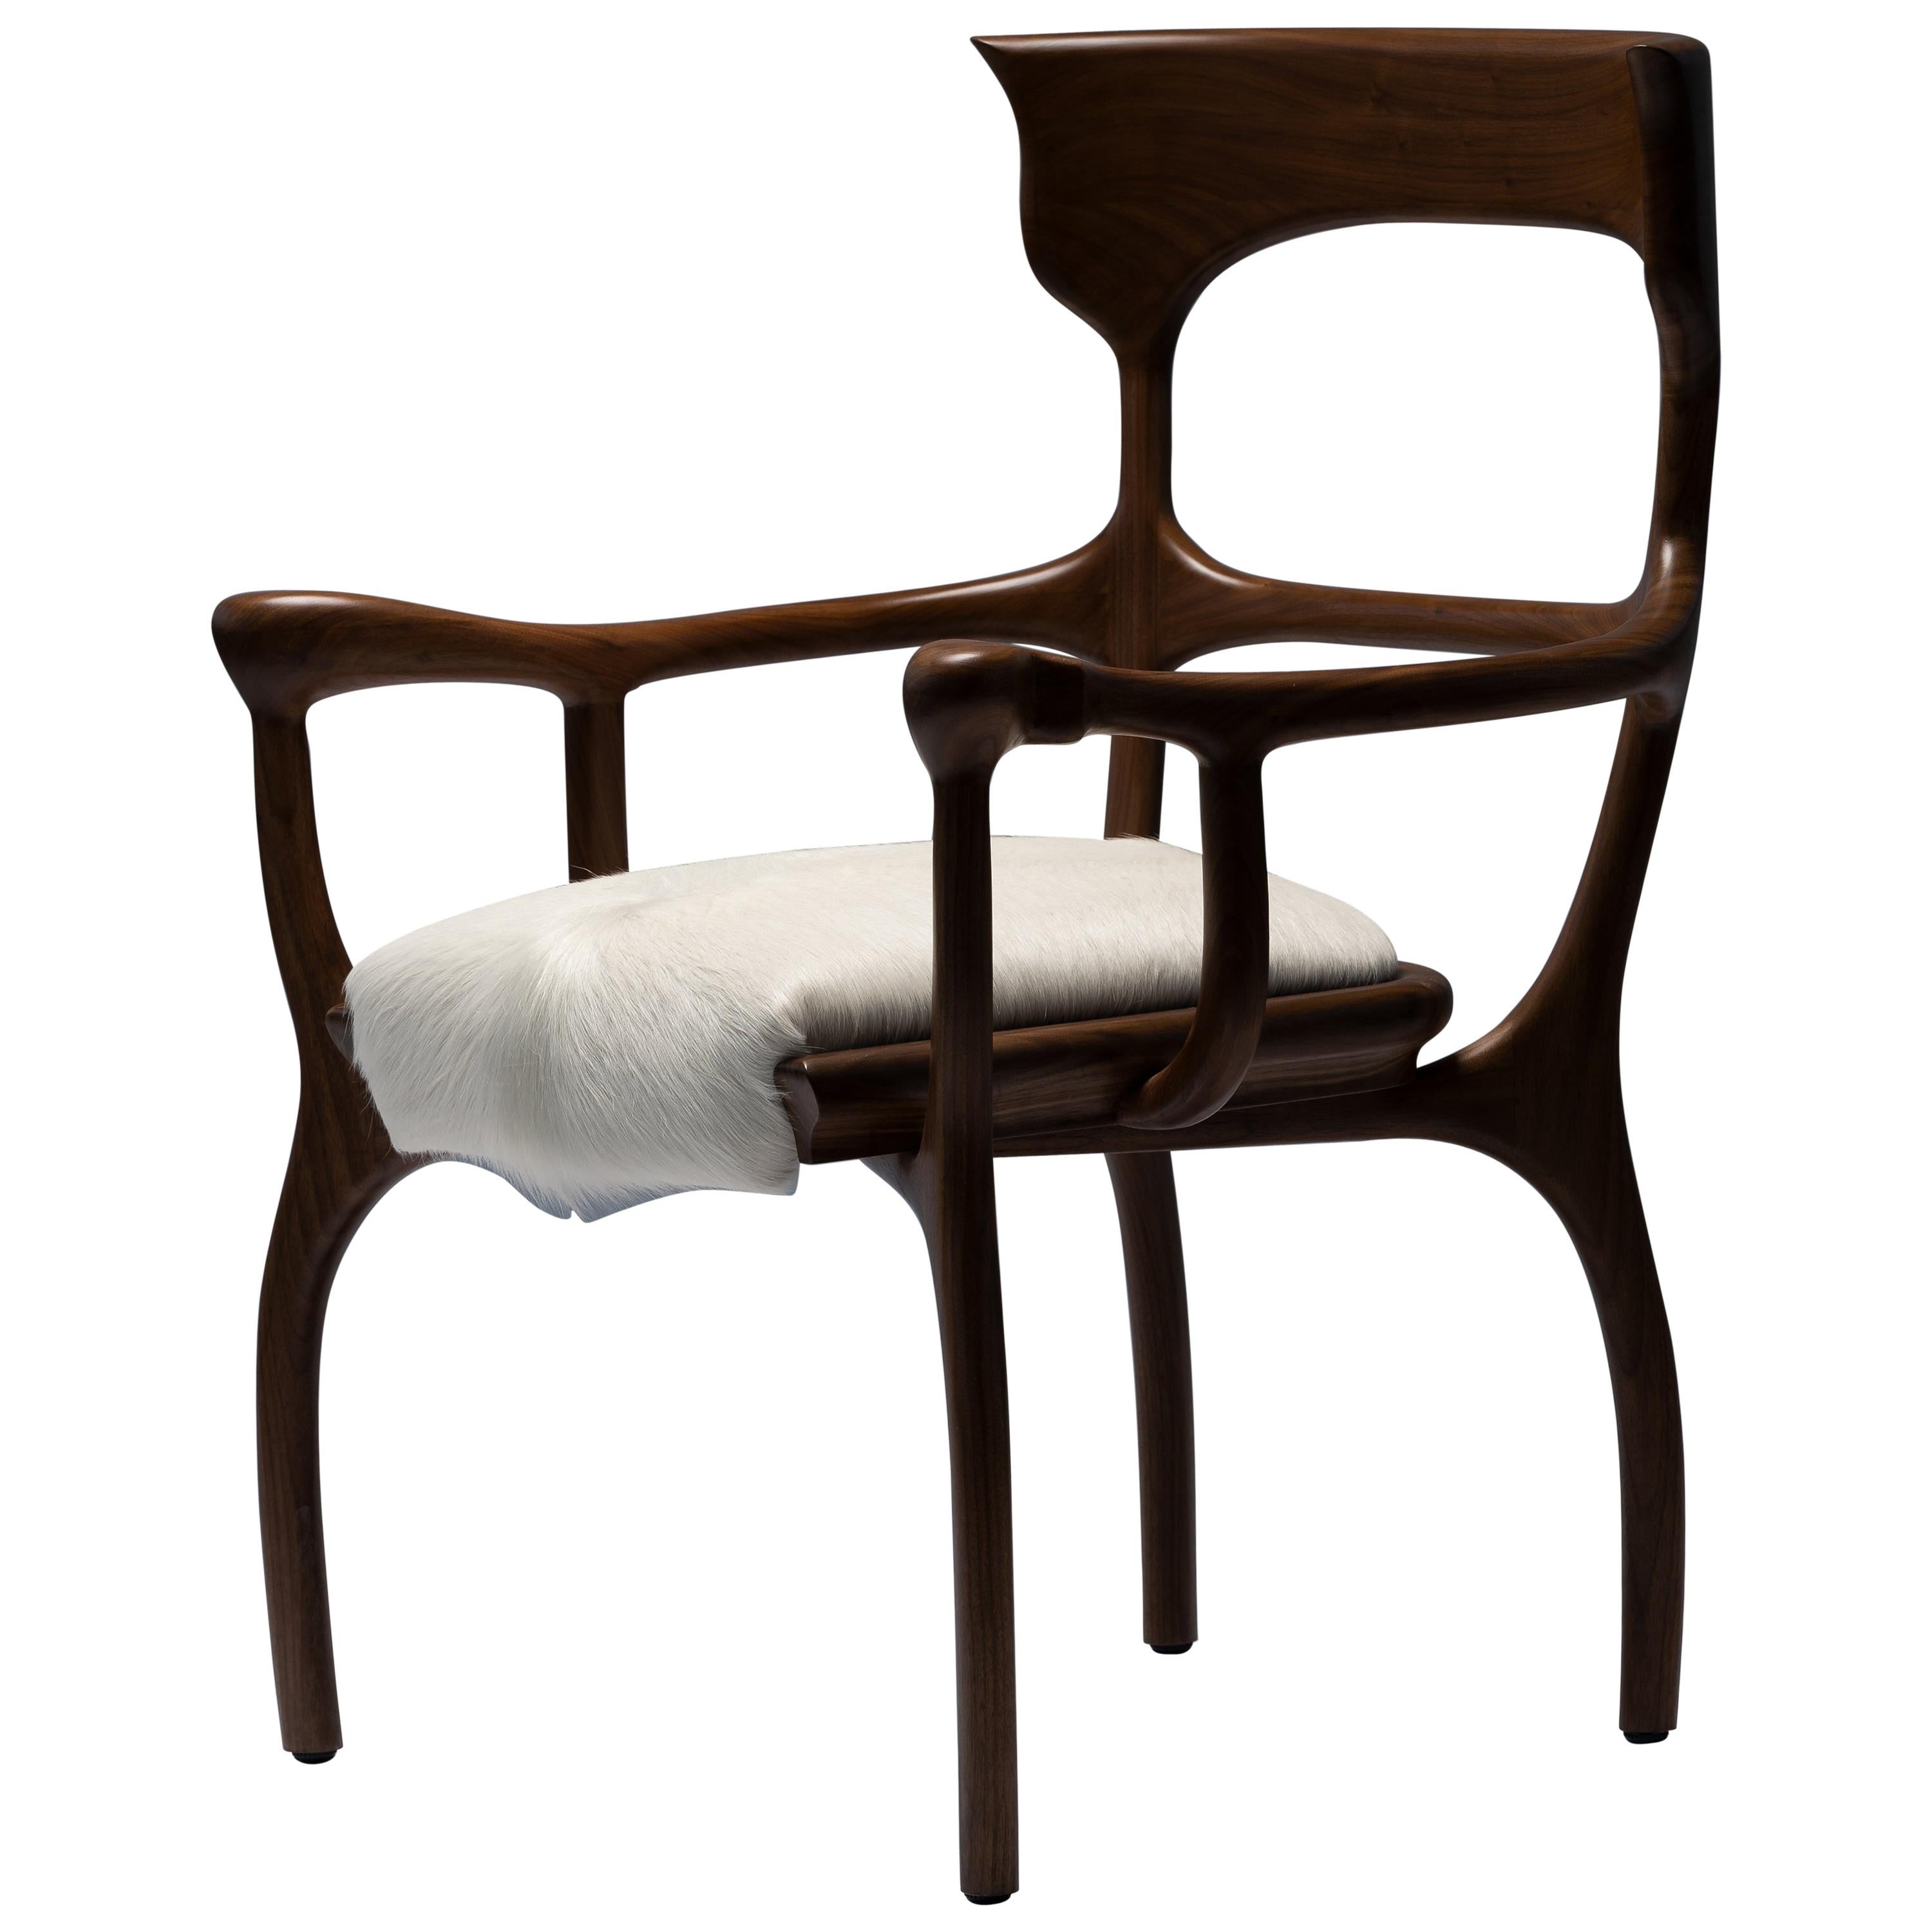 Fauteuil/chaise MARTA marron en noyer/ chêne avec assise en cuir de vache crème par Mandy Graham